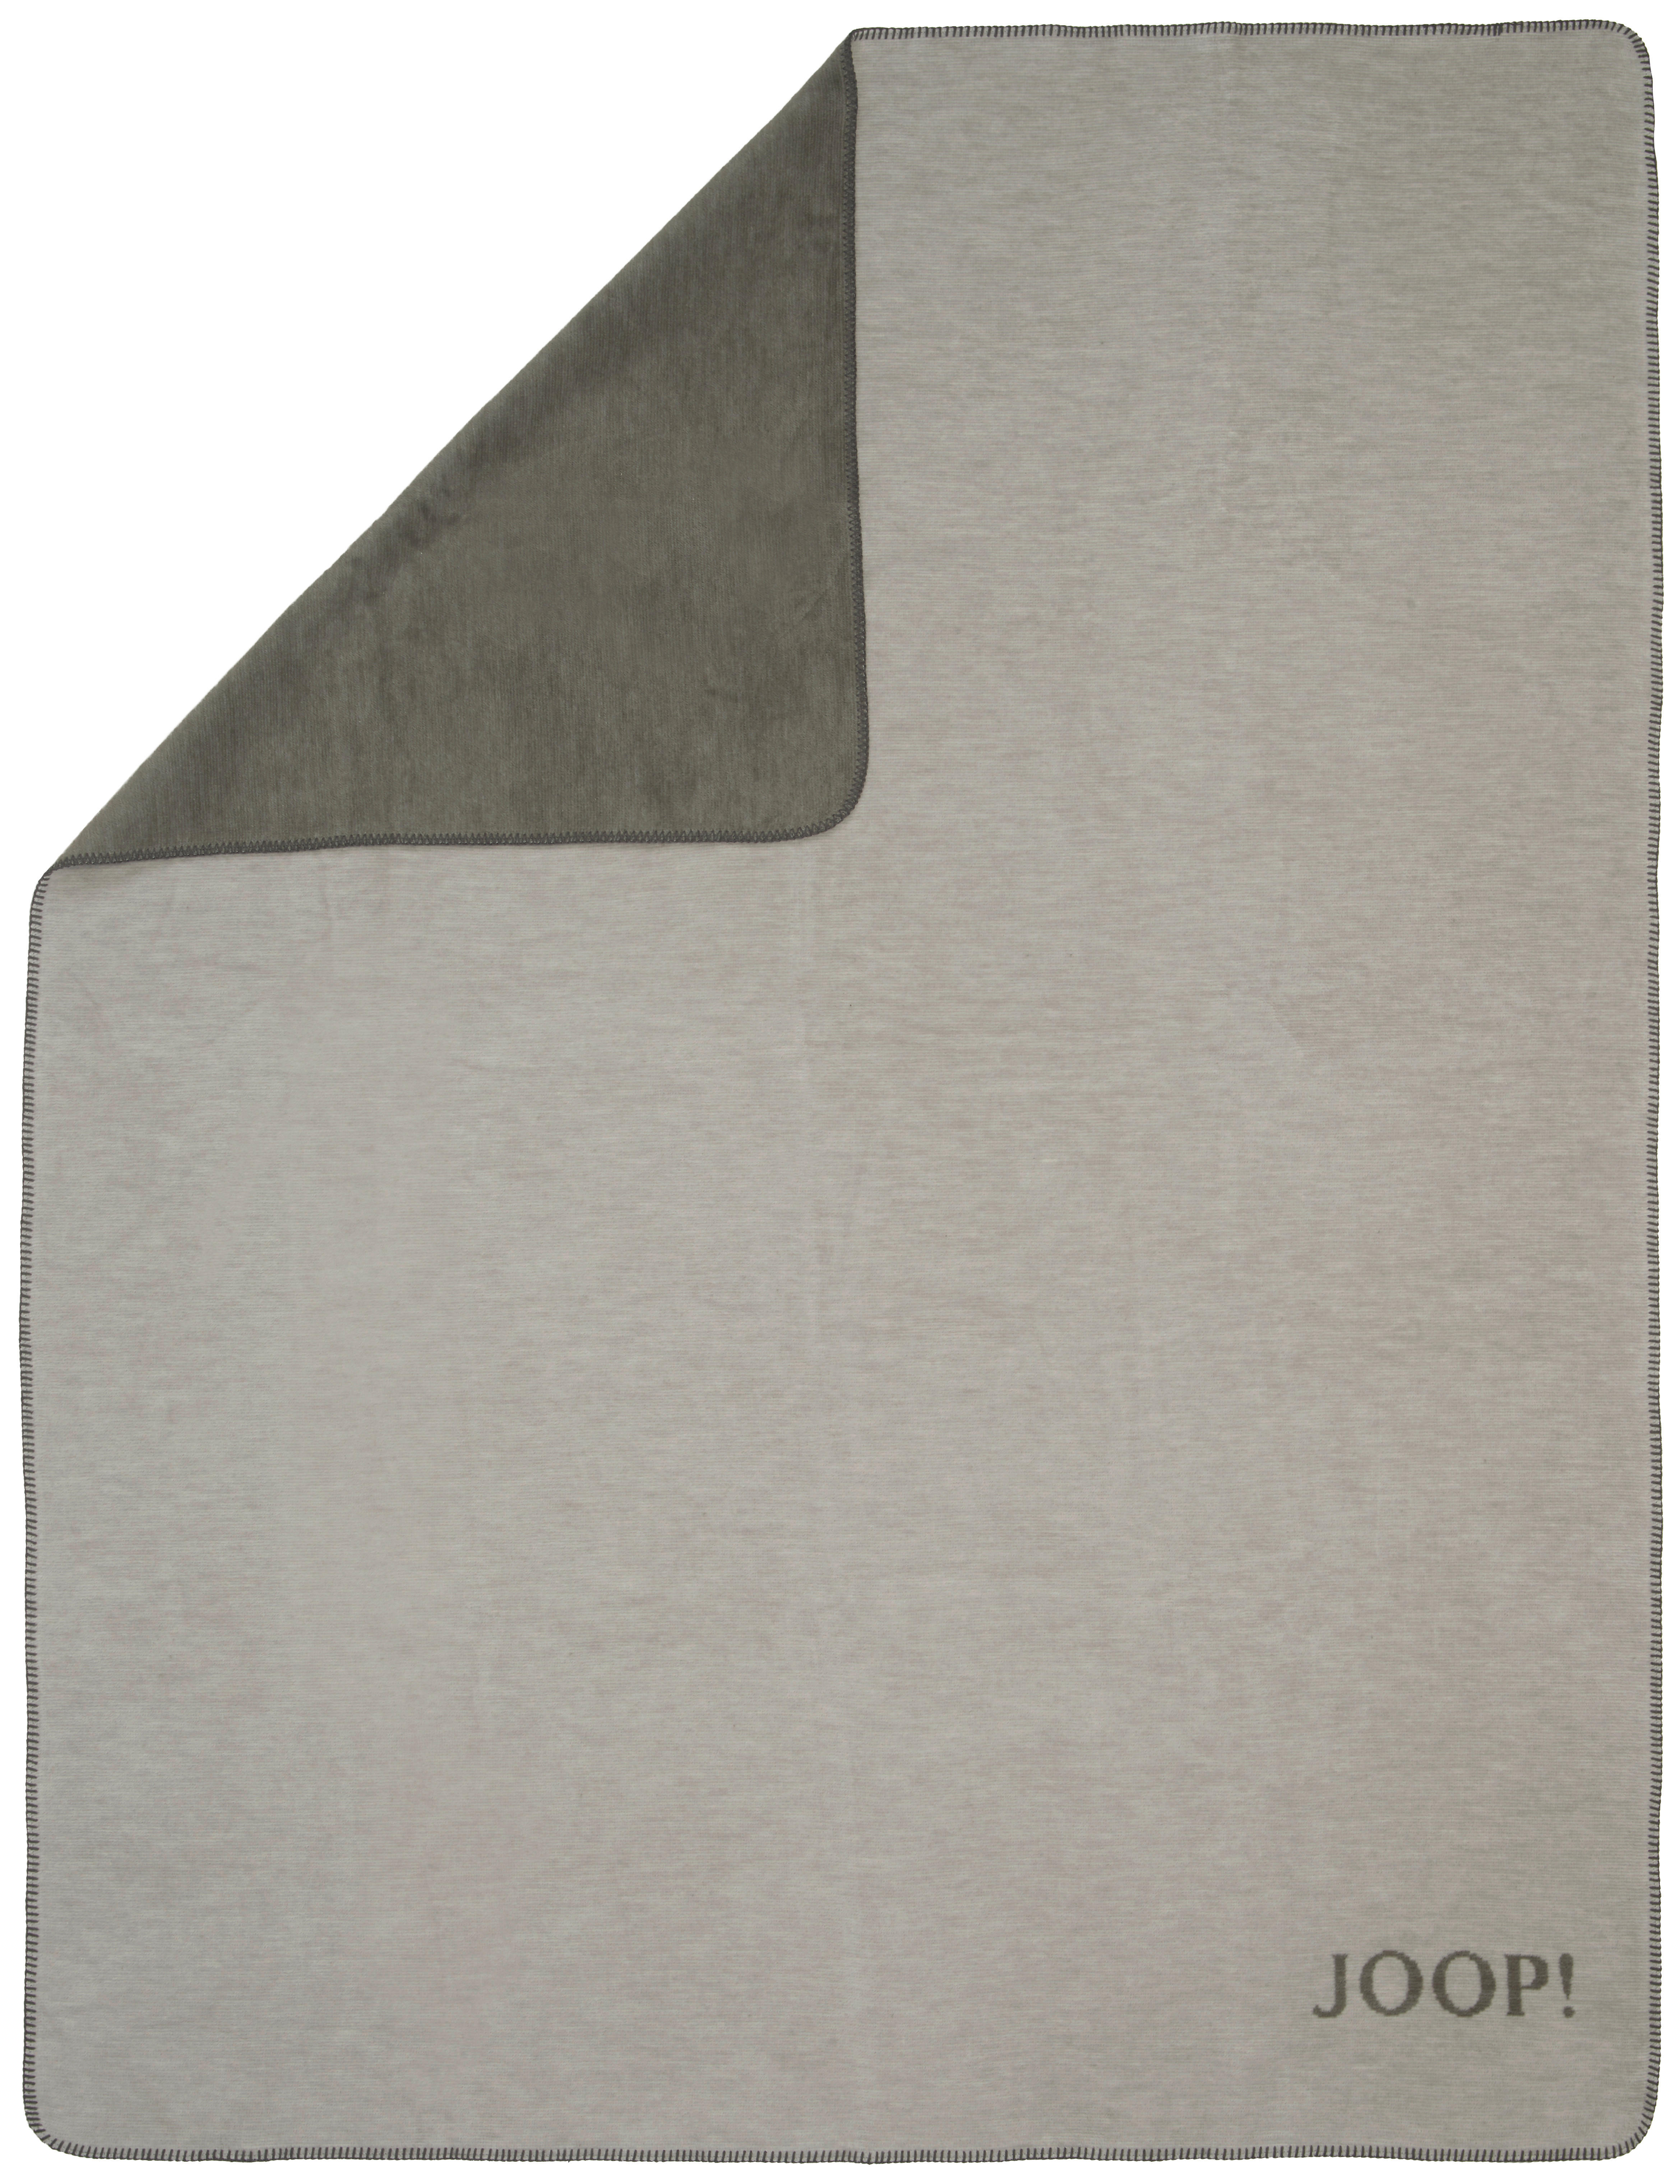 WOHNDECKE Melange Doubleface 150/200 cm  - Schieferfarben/Hellgrau, Design, Textil (150/200cm) - Joop!